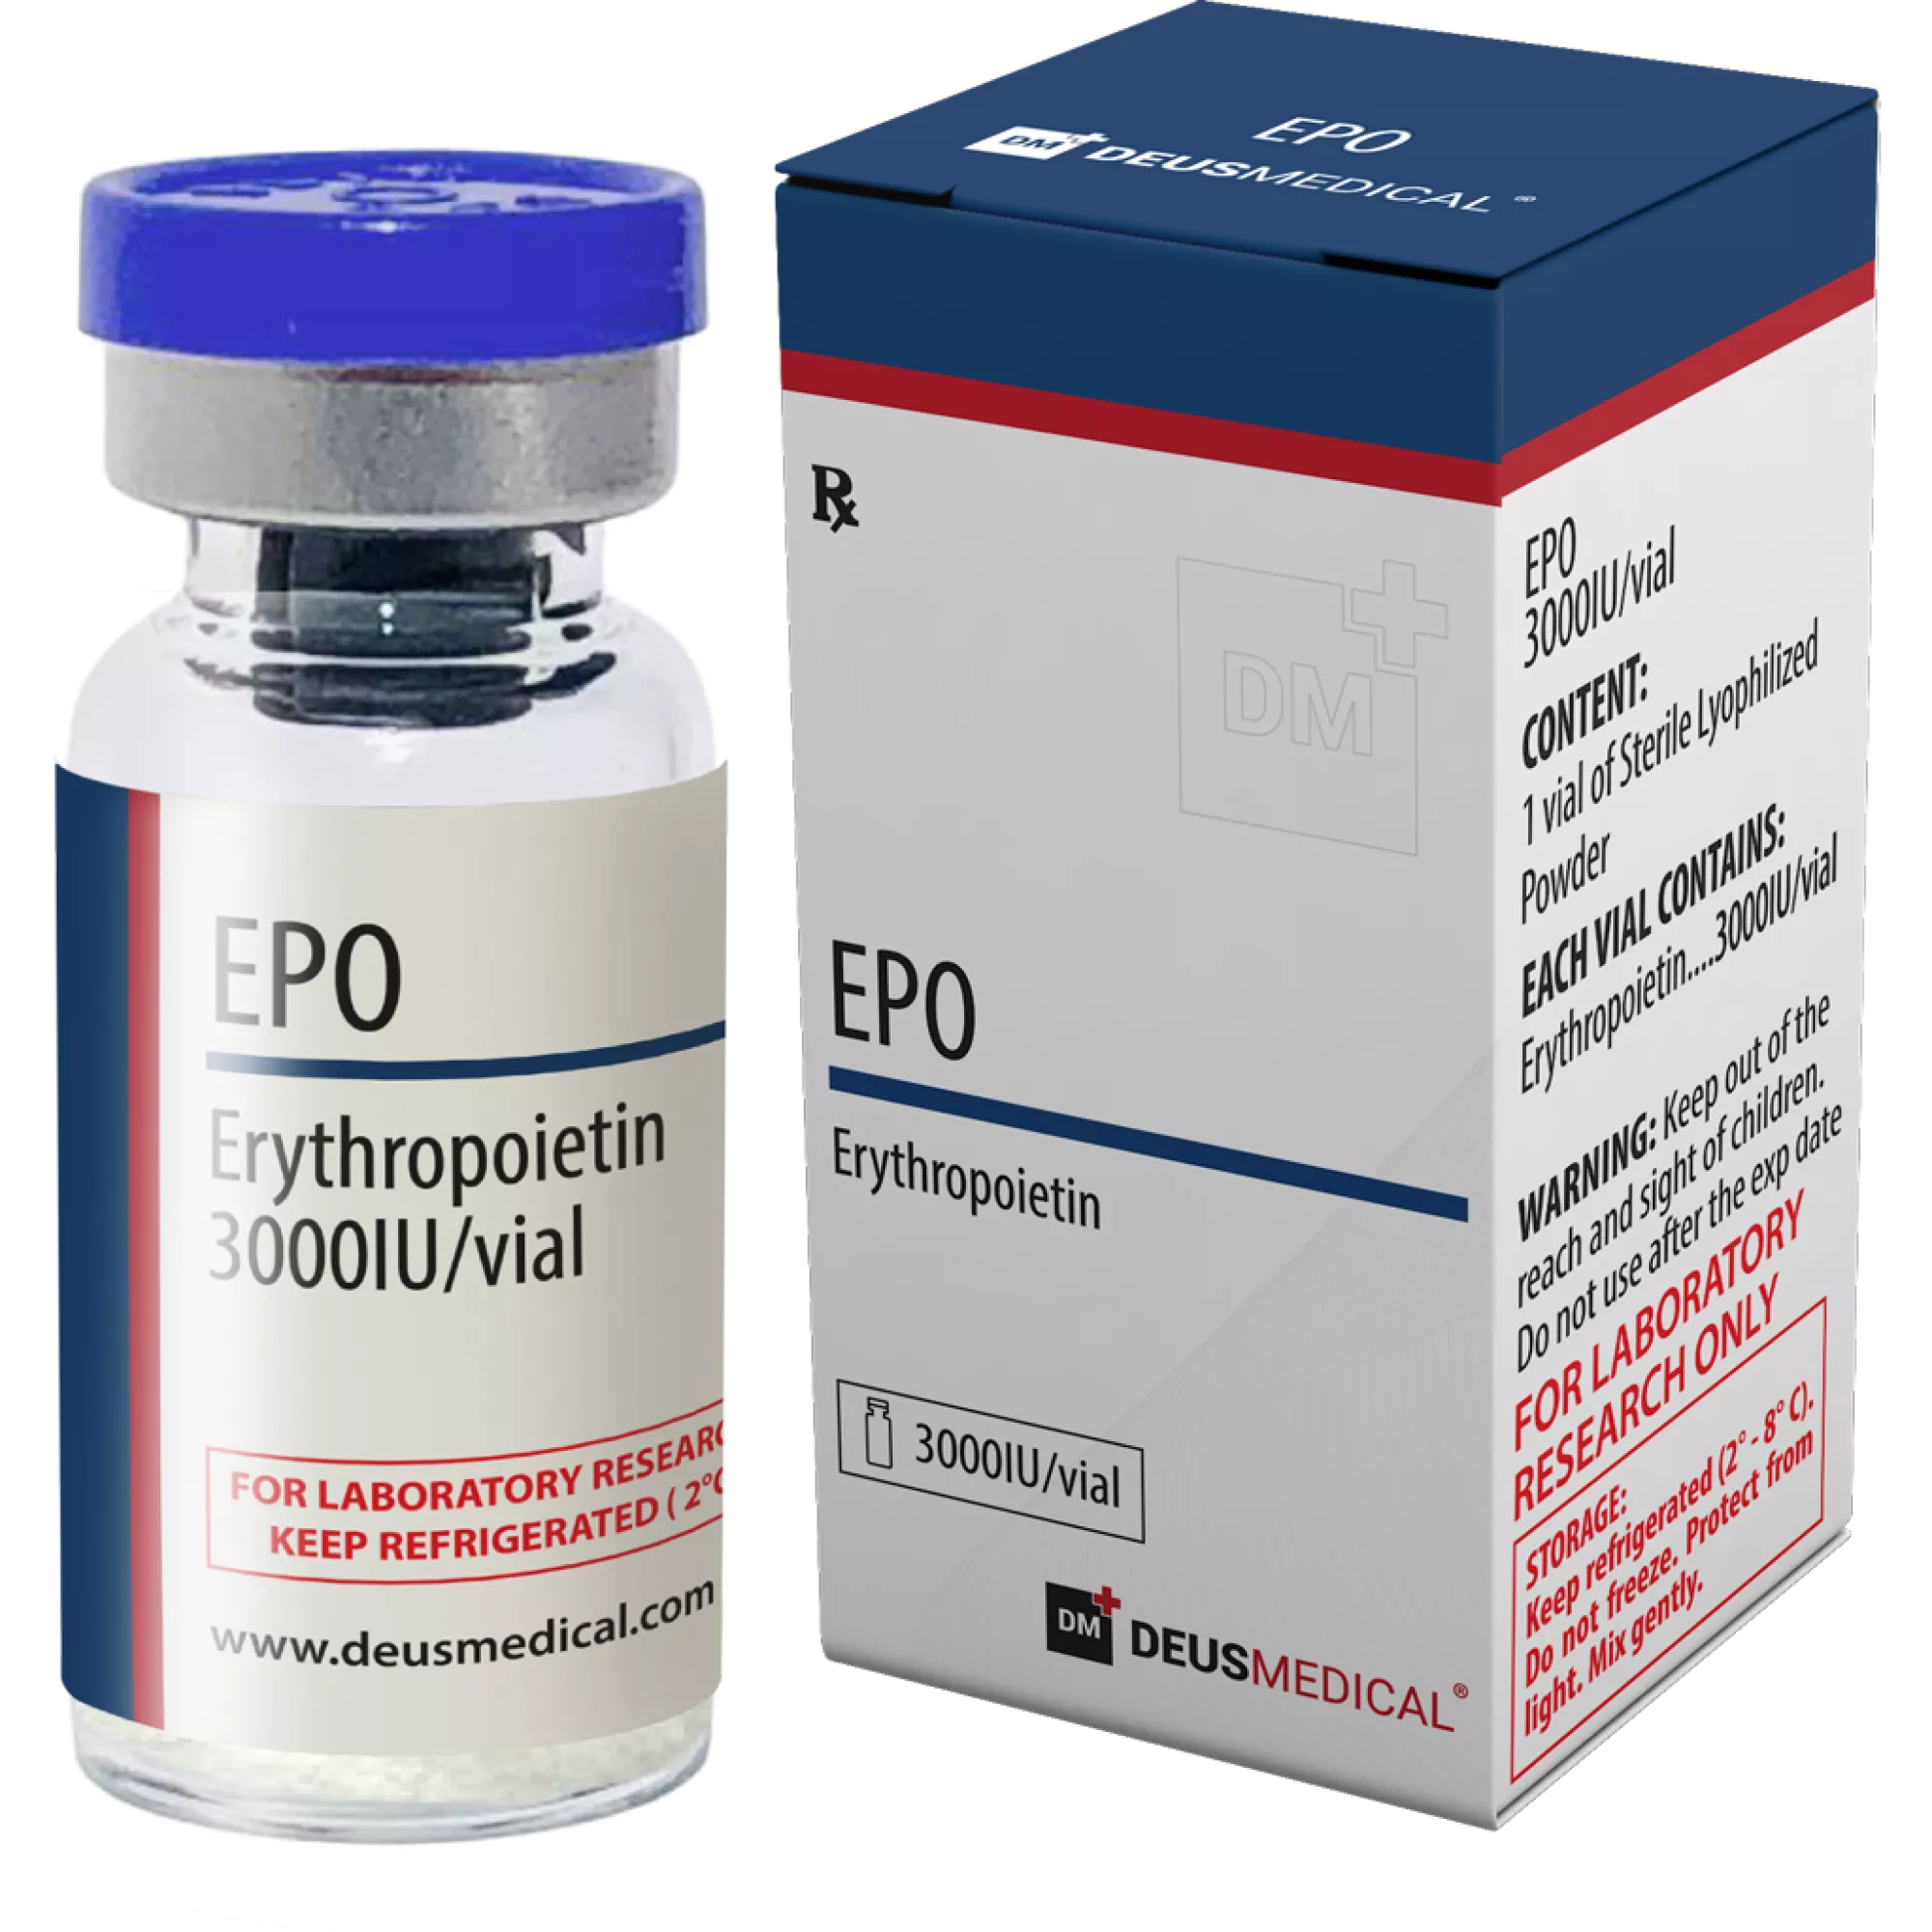 EPO (Erythropoietin), Deus Medical, Buy Steroids Online - www.deuspower.shop